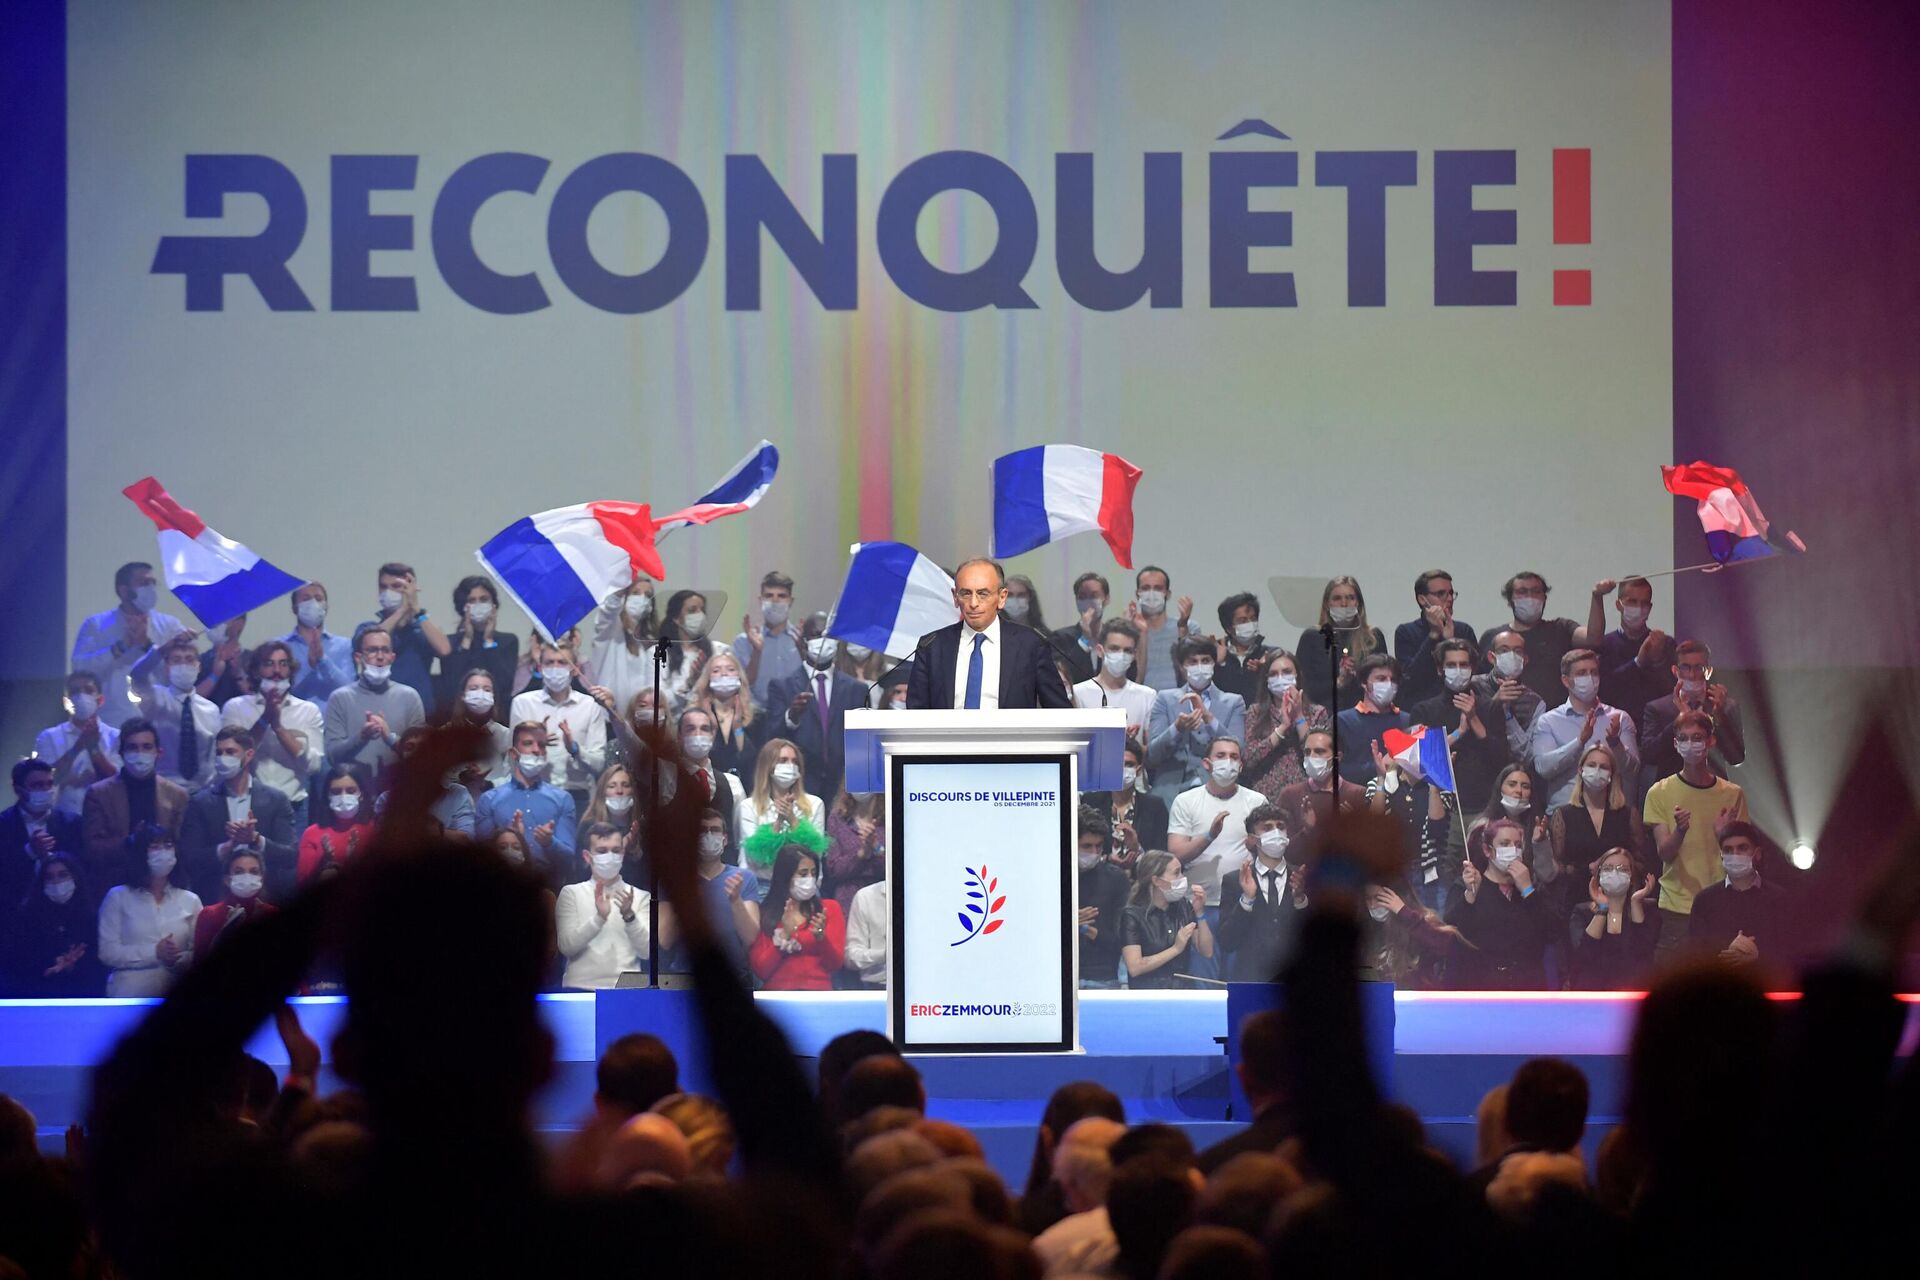 Éric Zemmour, candidato à presidência da França, apresenta o novo movimento Reconquete! (Reconquista) em Villepinte, Paris, 5 de dezembro de 2021 - Sputnik Brasil, 1920, 06.12.2021